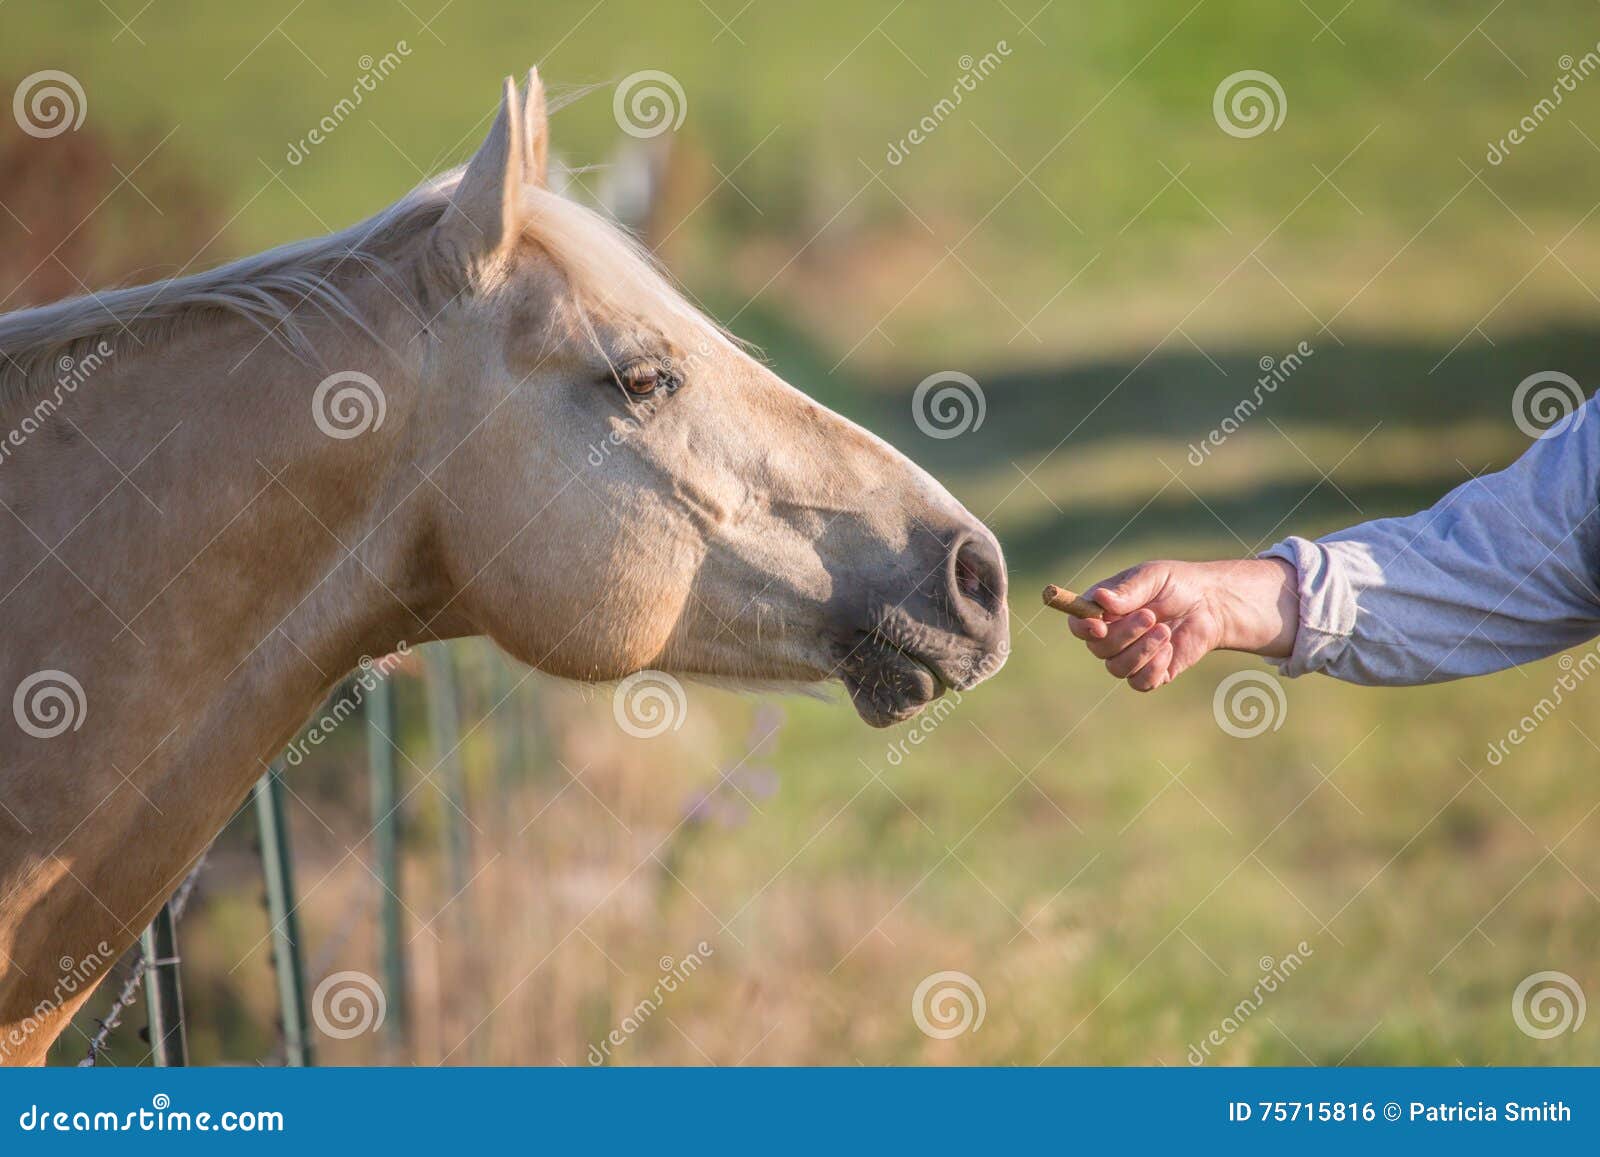 man feeding horse a treat